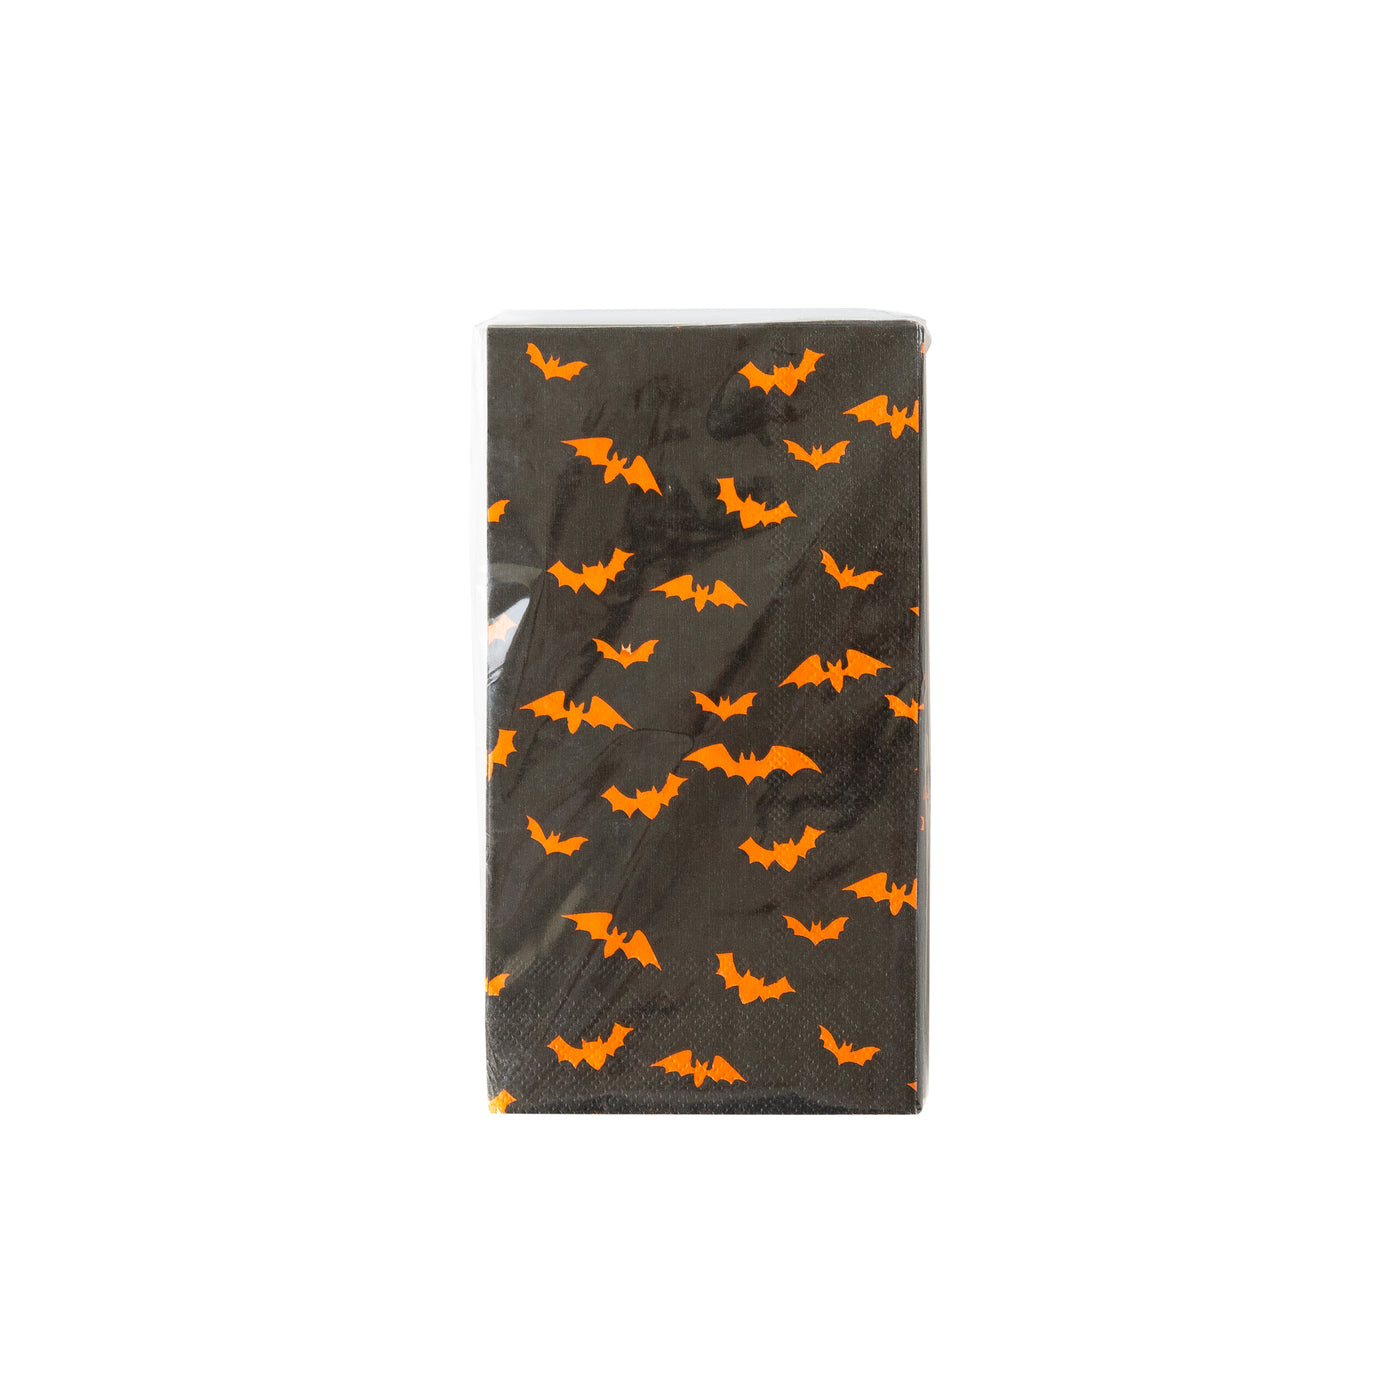 PLTS307D - Bats Paper Guest Towel Napkin